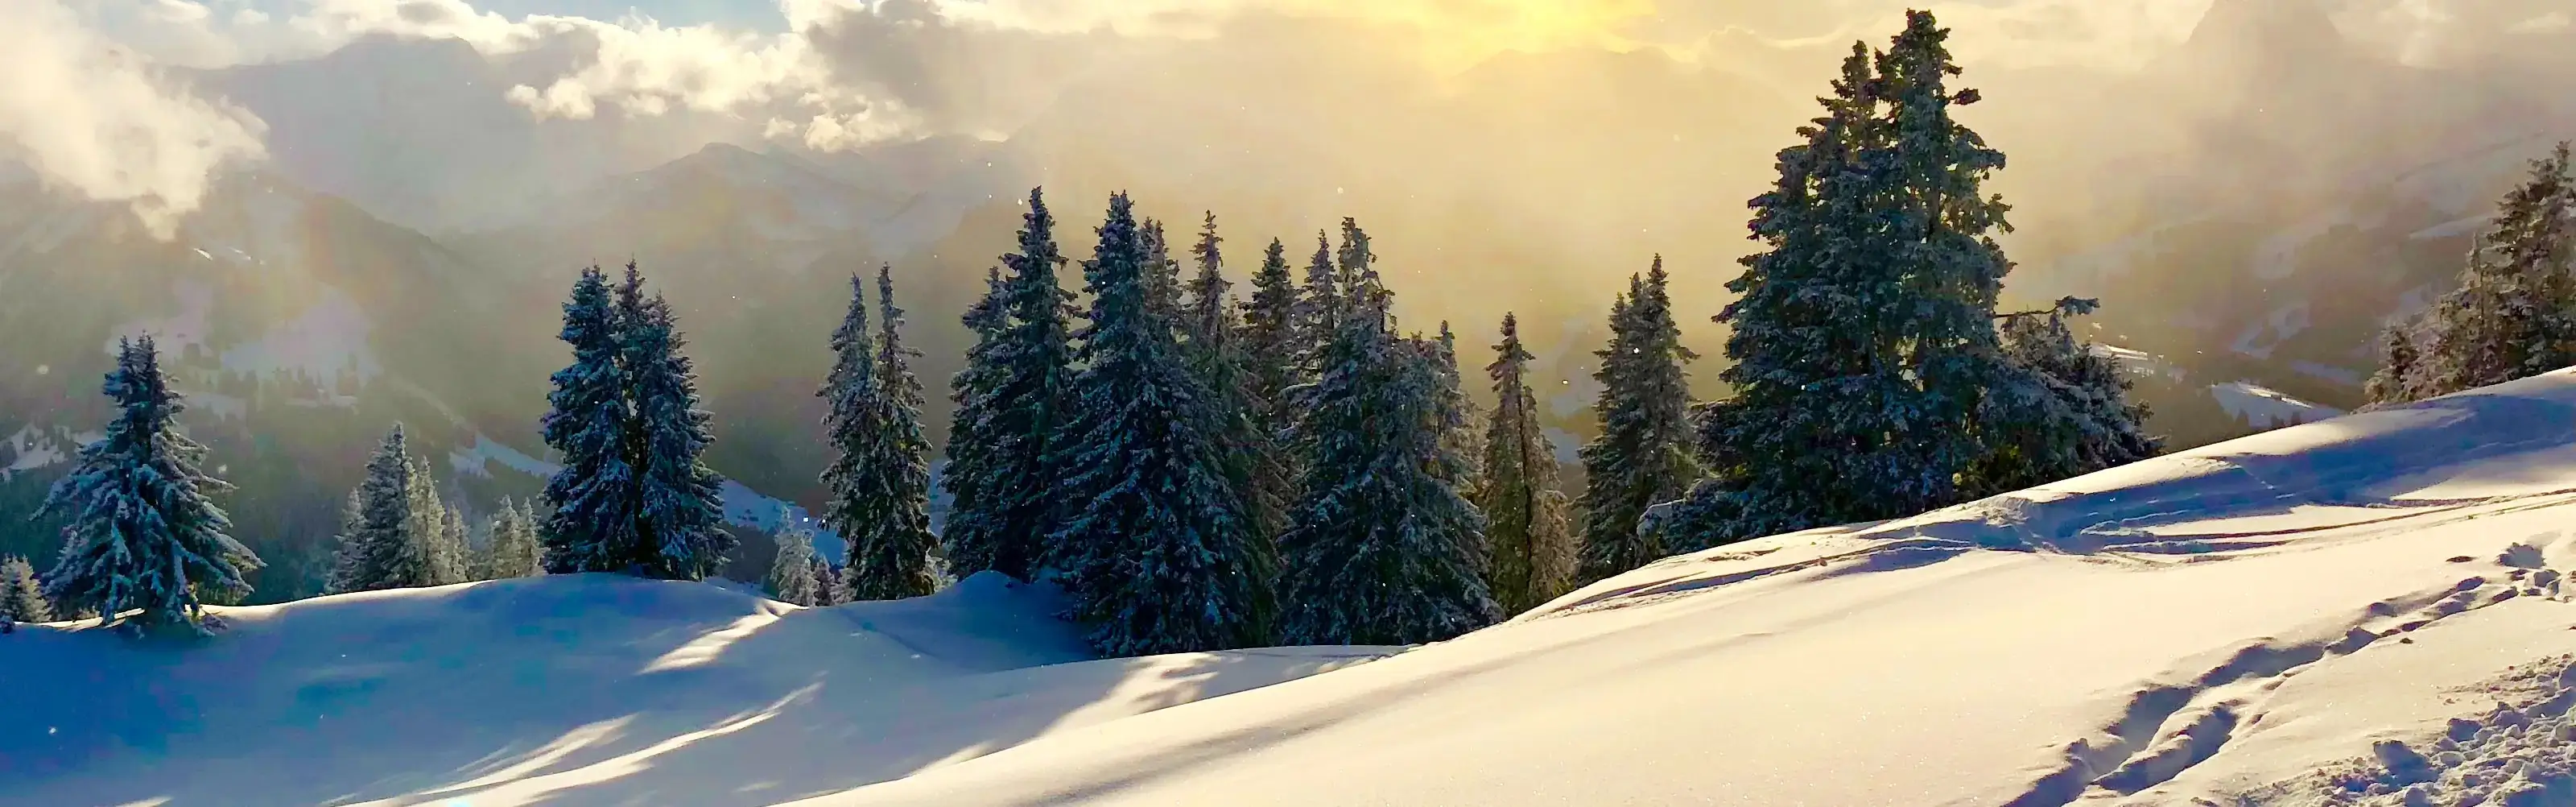 Winterlandschaft mit Tannen im Sonnenuntergang.